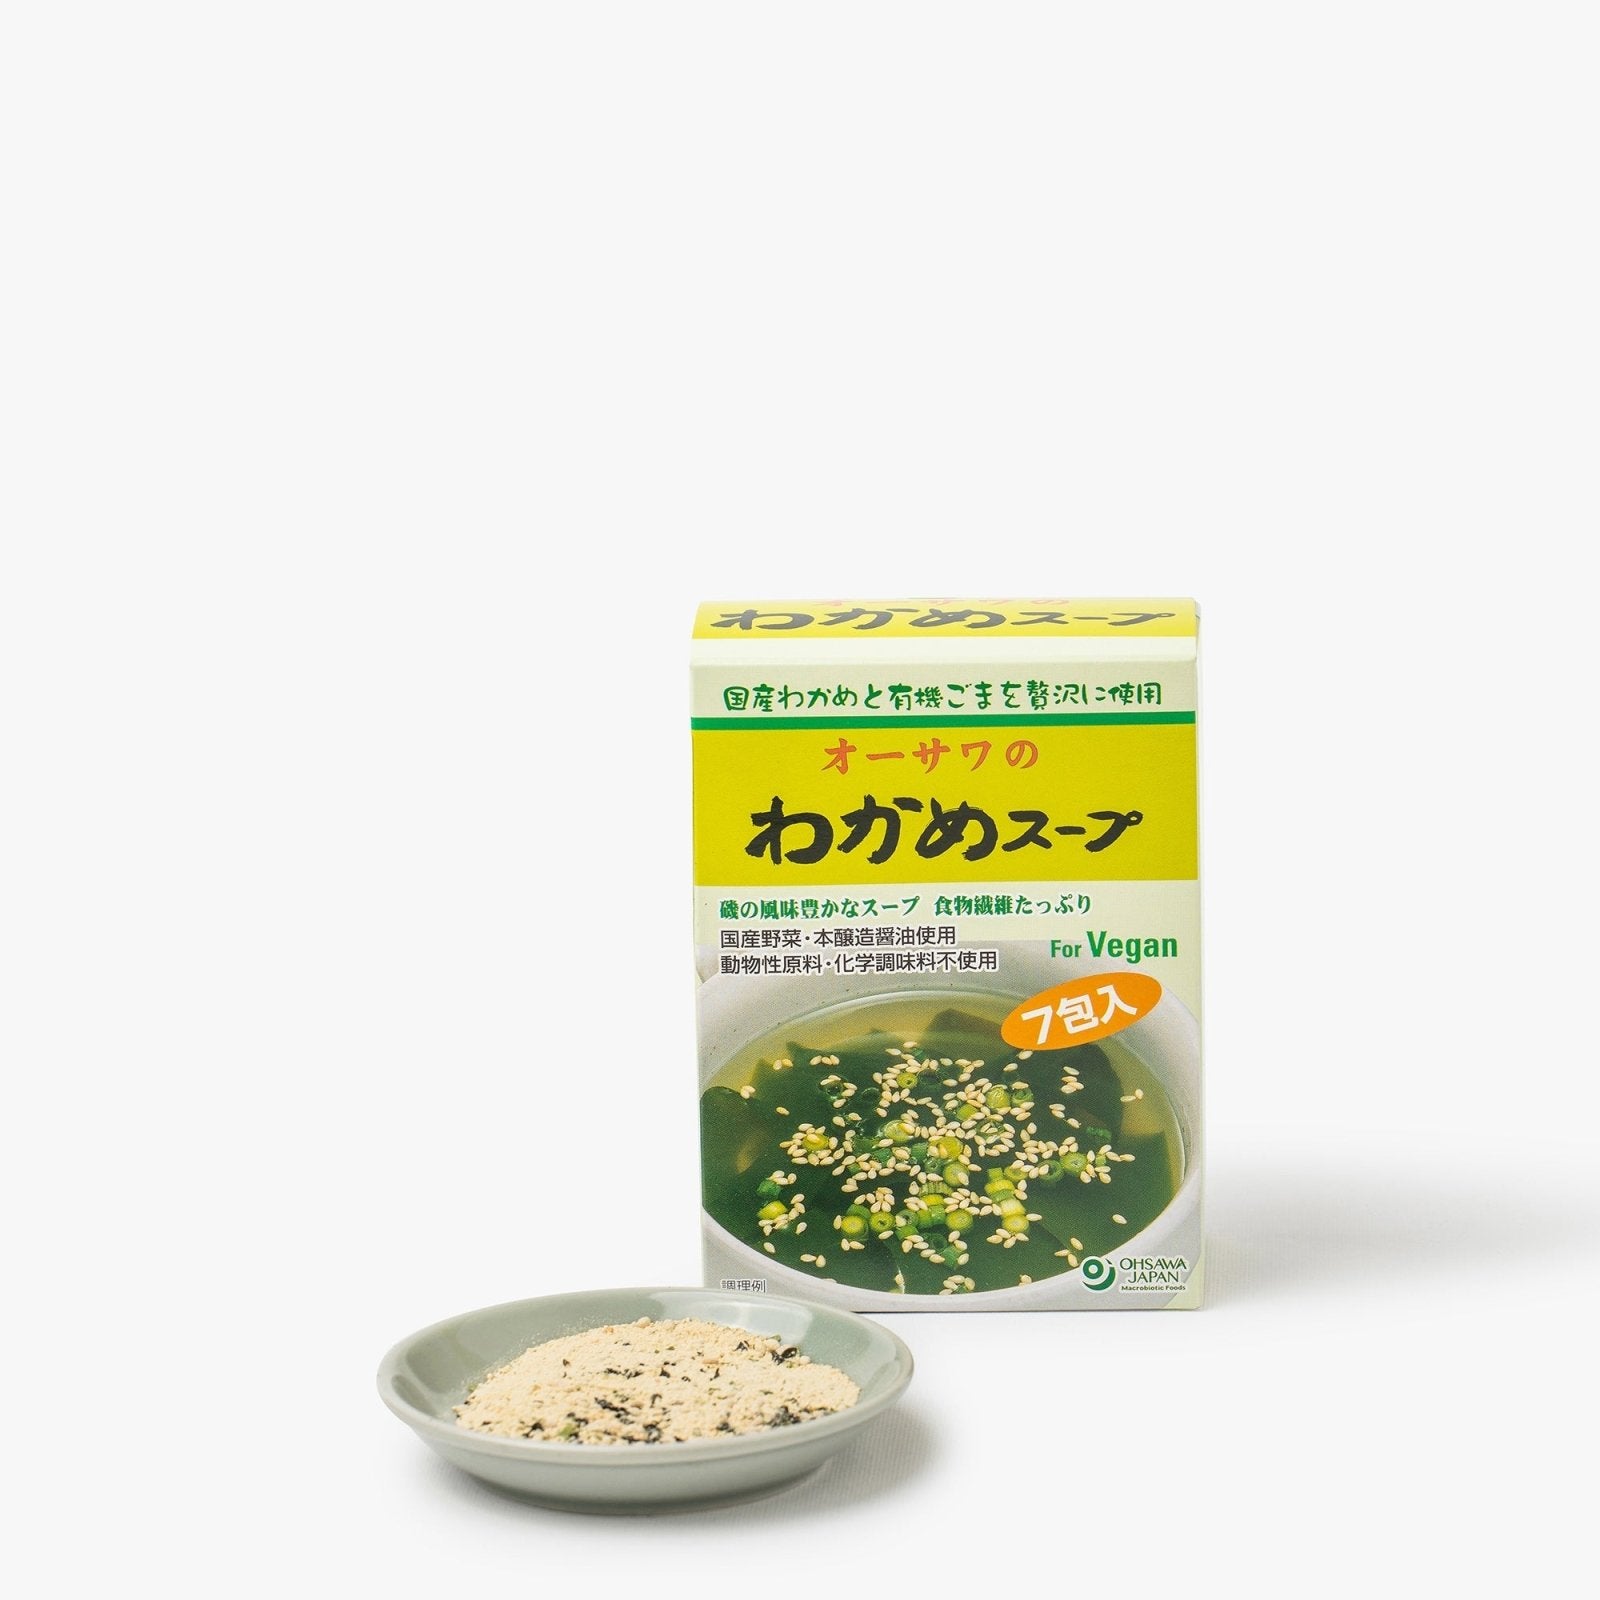 Soupe miso et légumes instantanée en sachets - Ariaké Japan